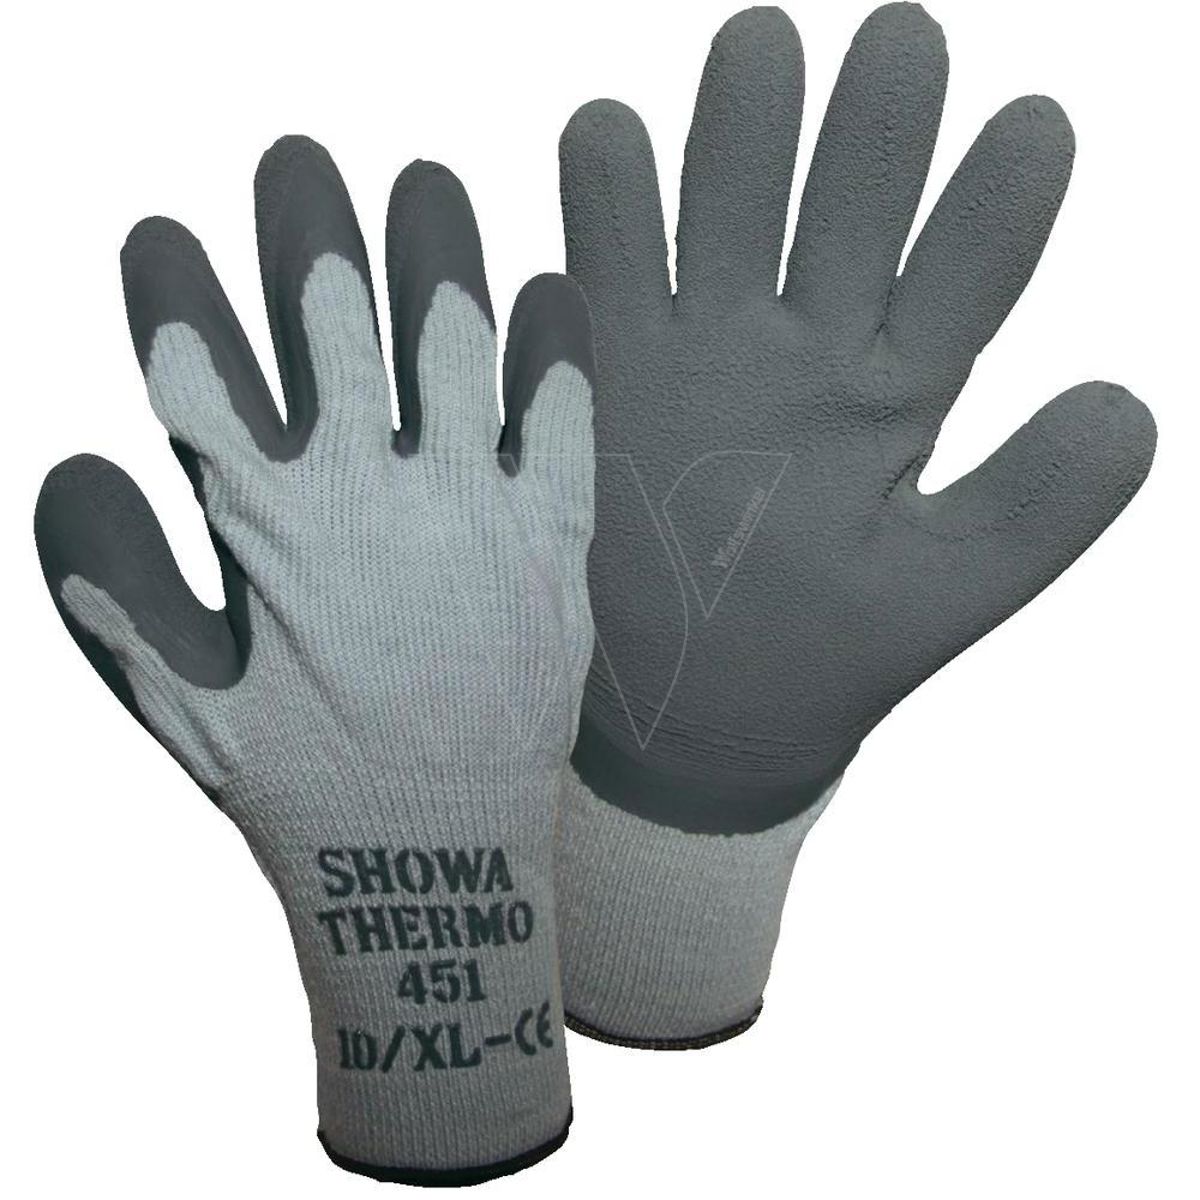 Showa thermo 451 work glove xl